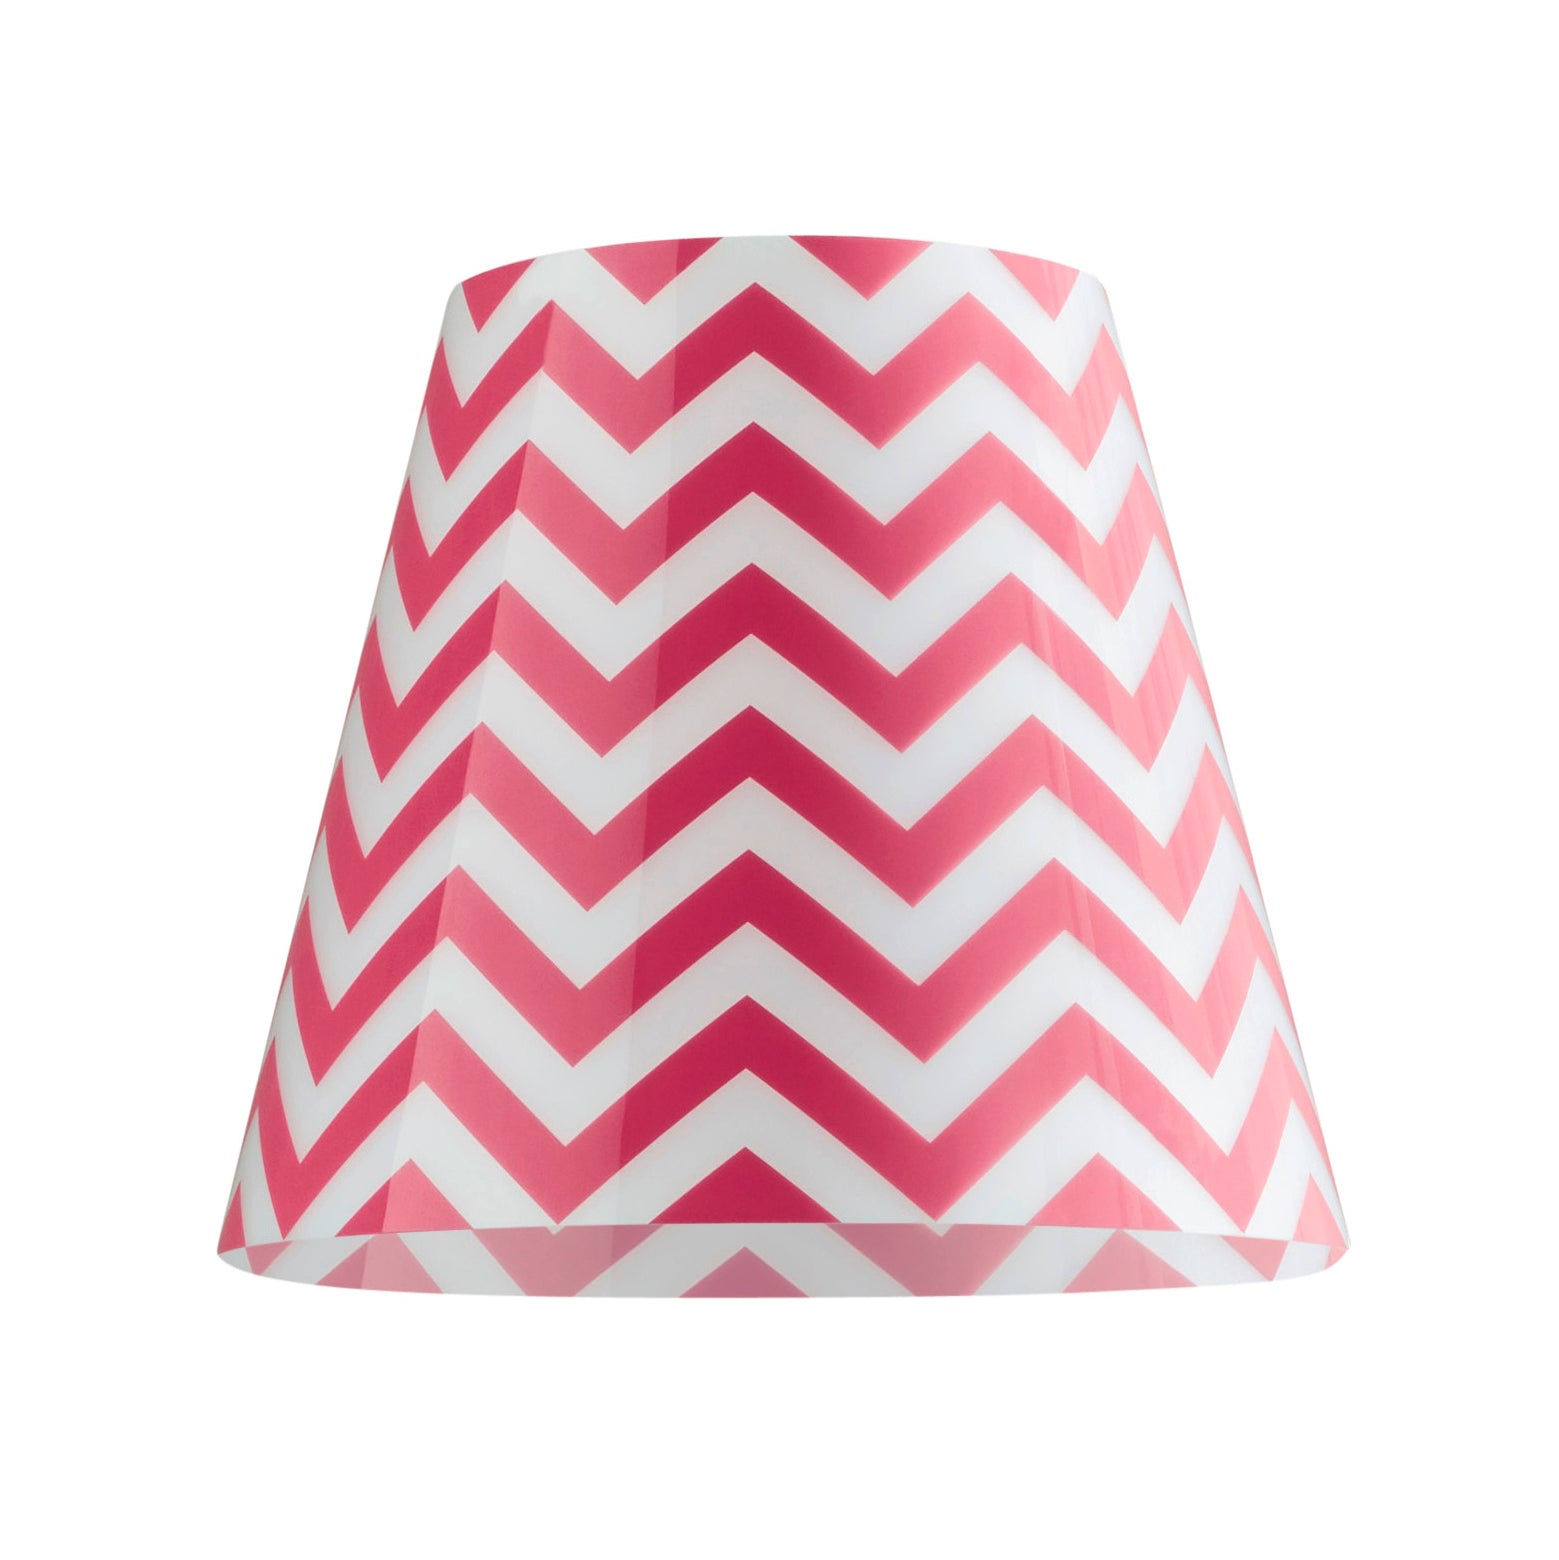 Wechselbares Design Cover für den Swap Lampenschirm von Moree; weiß/pinkes Kunststoffgewebe im Zickzack Muster, rund, nach unten leicht ausgestellt.